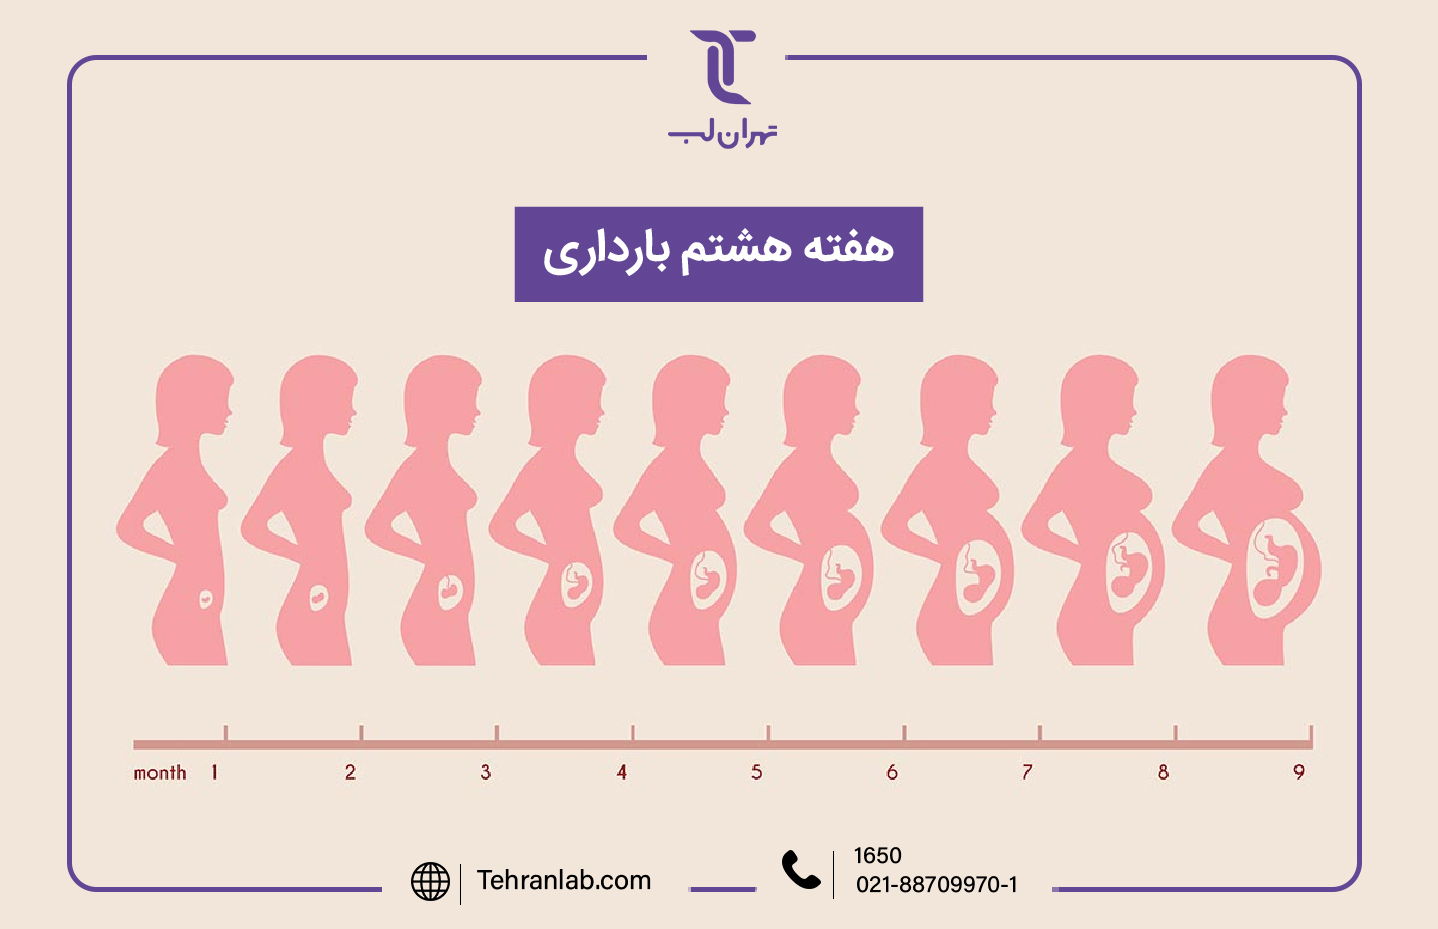 همه چیز درباره هفته هشتم (8) بارداری | آزمایشگاه تهران لب